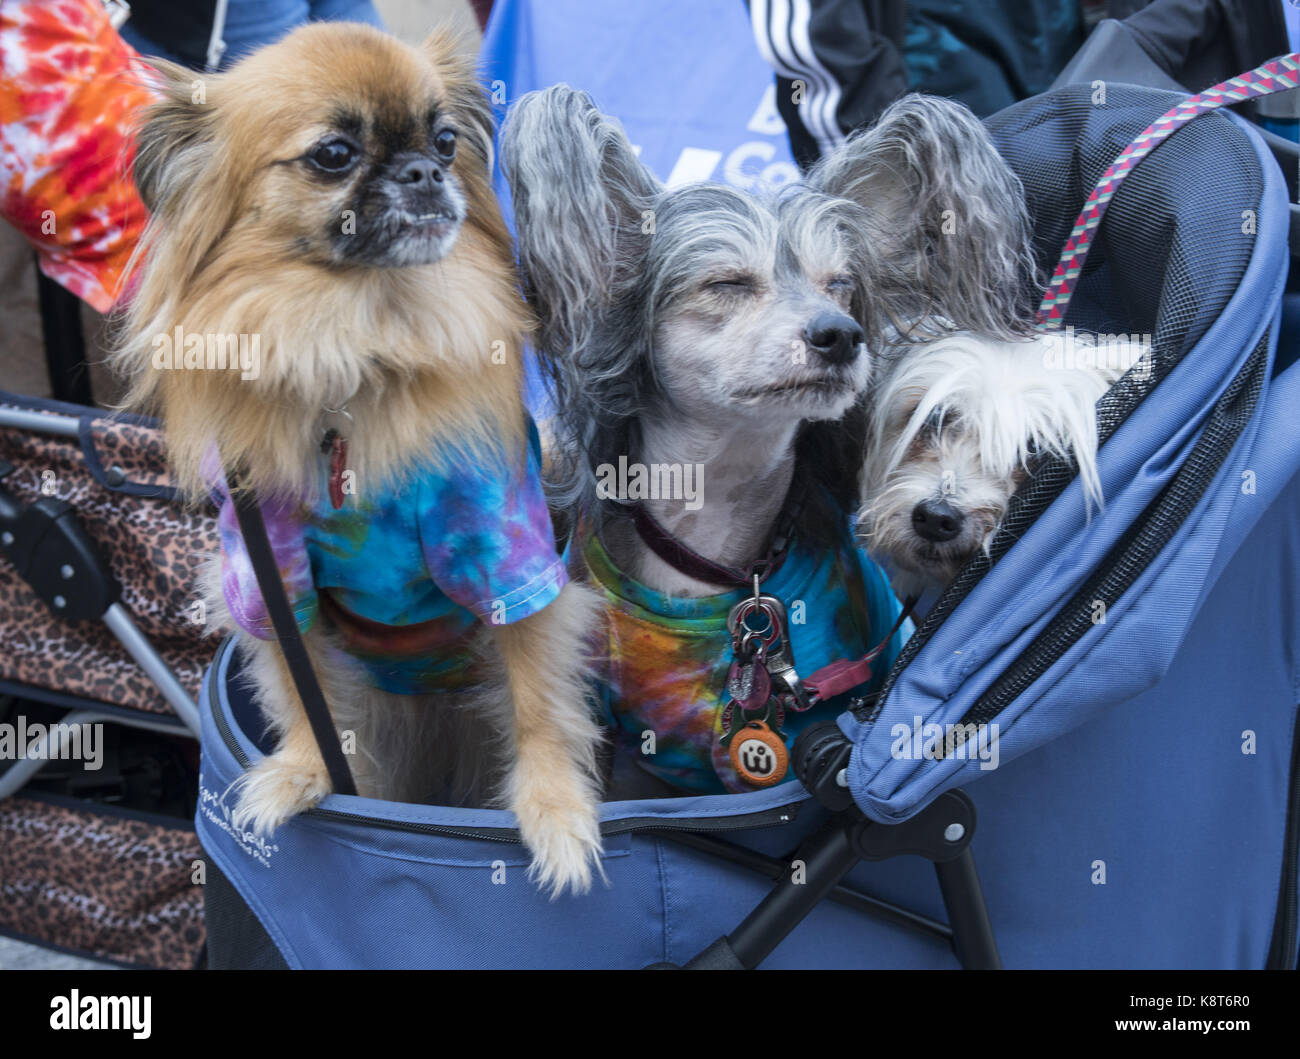 Tierfreunde feiern Nationalen Dog Day an der Brooklyn Public Library mit einem Hund fashion show auf dem grünen Teppich. National Dog Day gefeiert 26. August jährlich und wurde im Jahr 2004 durch Pet & Familie Lifestyle Experte und Animal Advocate, Colleen Paige gegründet. Stockfoto